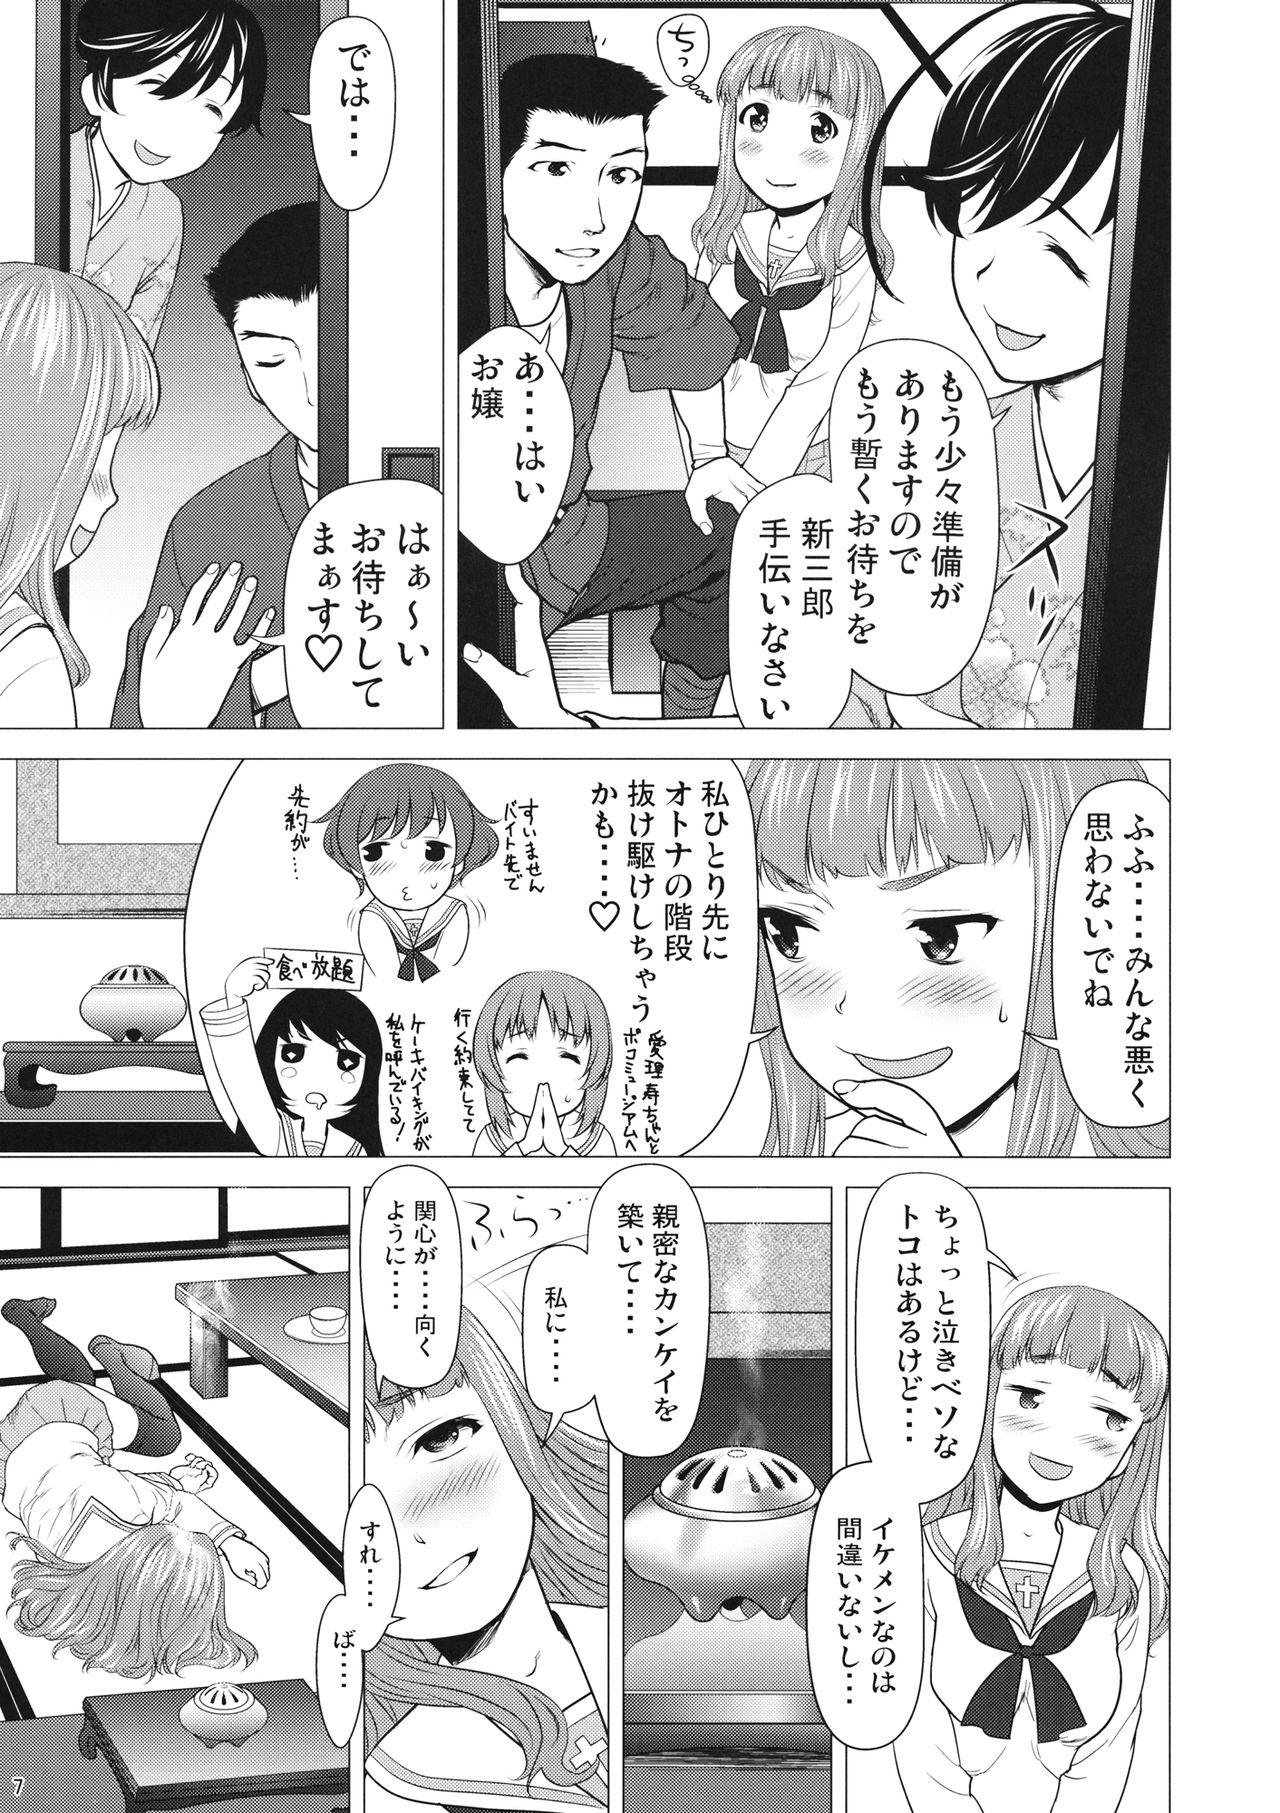 Amateurs Isuzu no Shitsuke - Girls und panzer Ecchi - Page 6